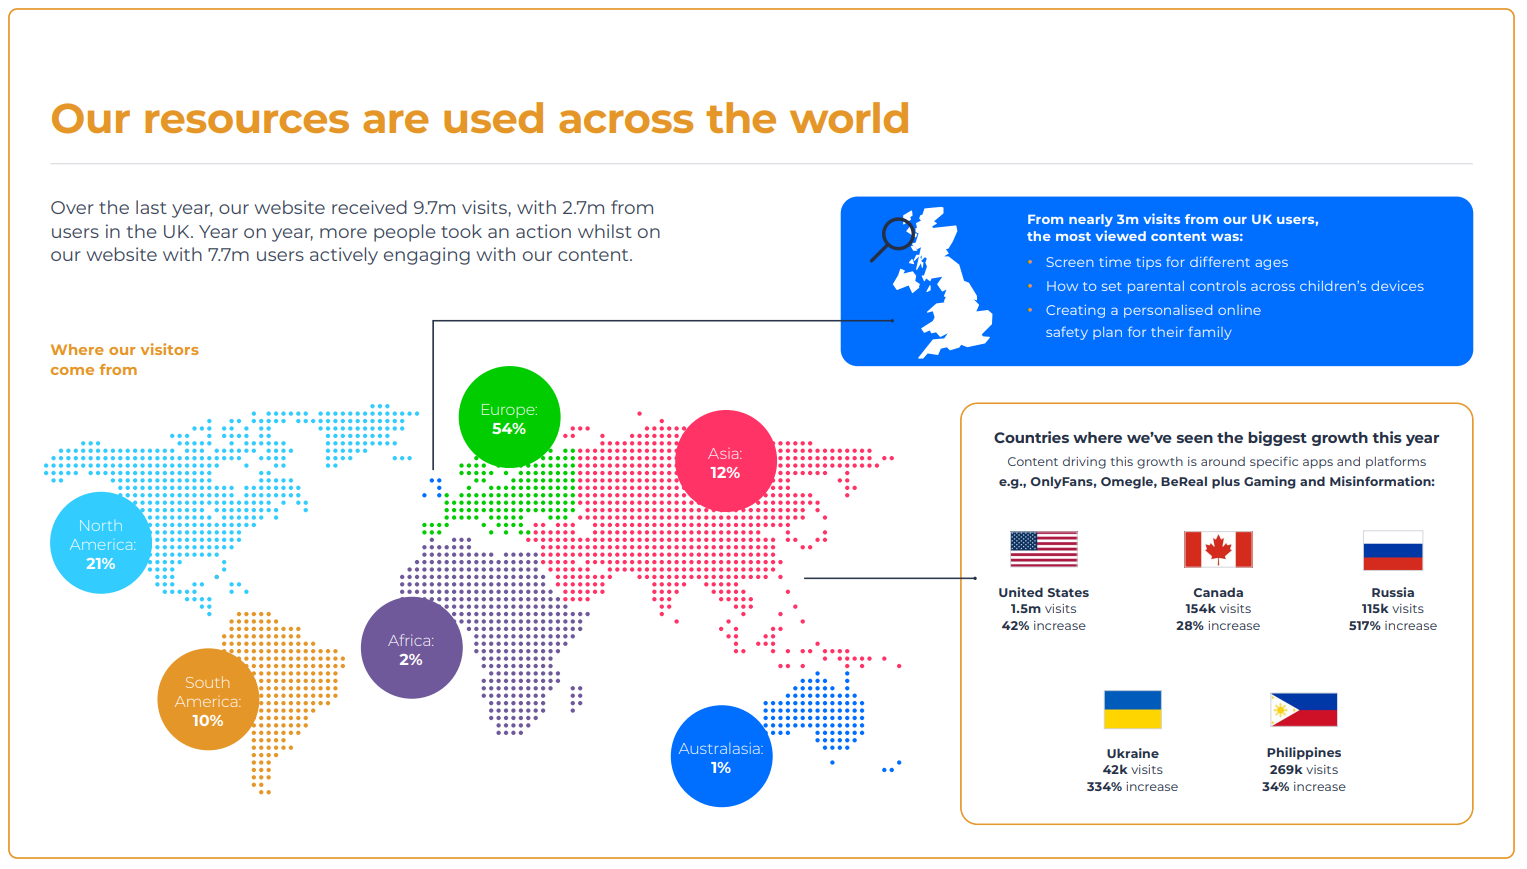 Afbeelding uit het Impact Report dat het gebruikspercentage over de hele wereld laat zien.